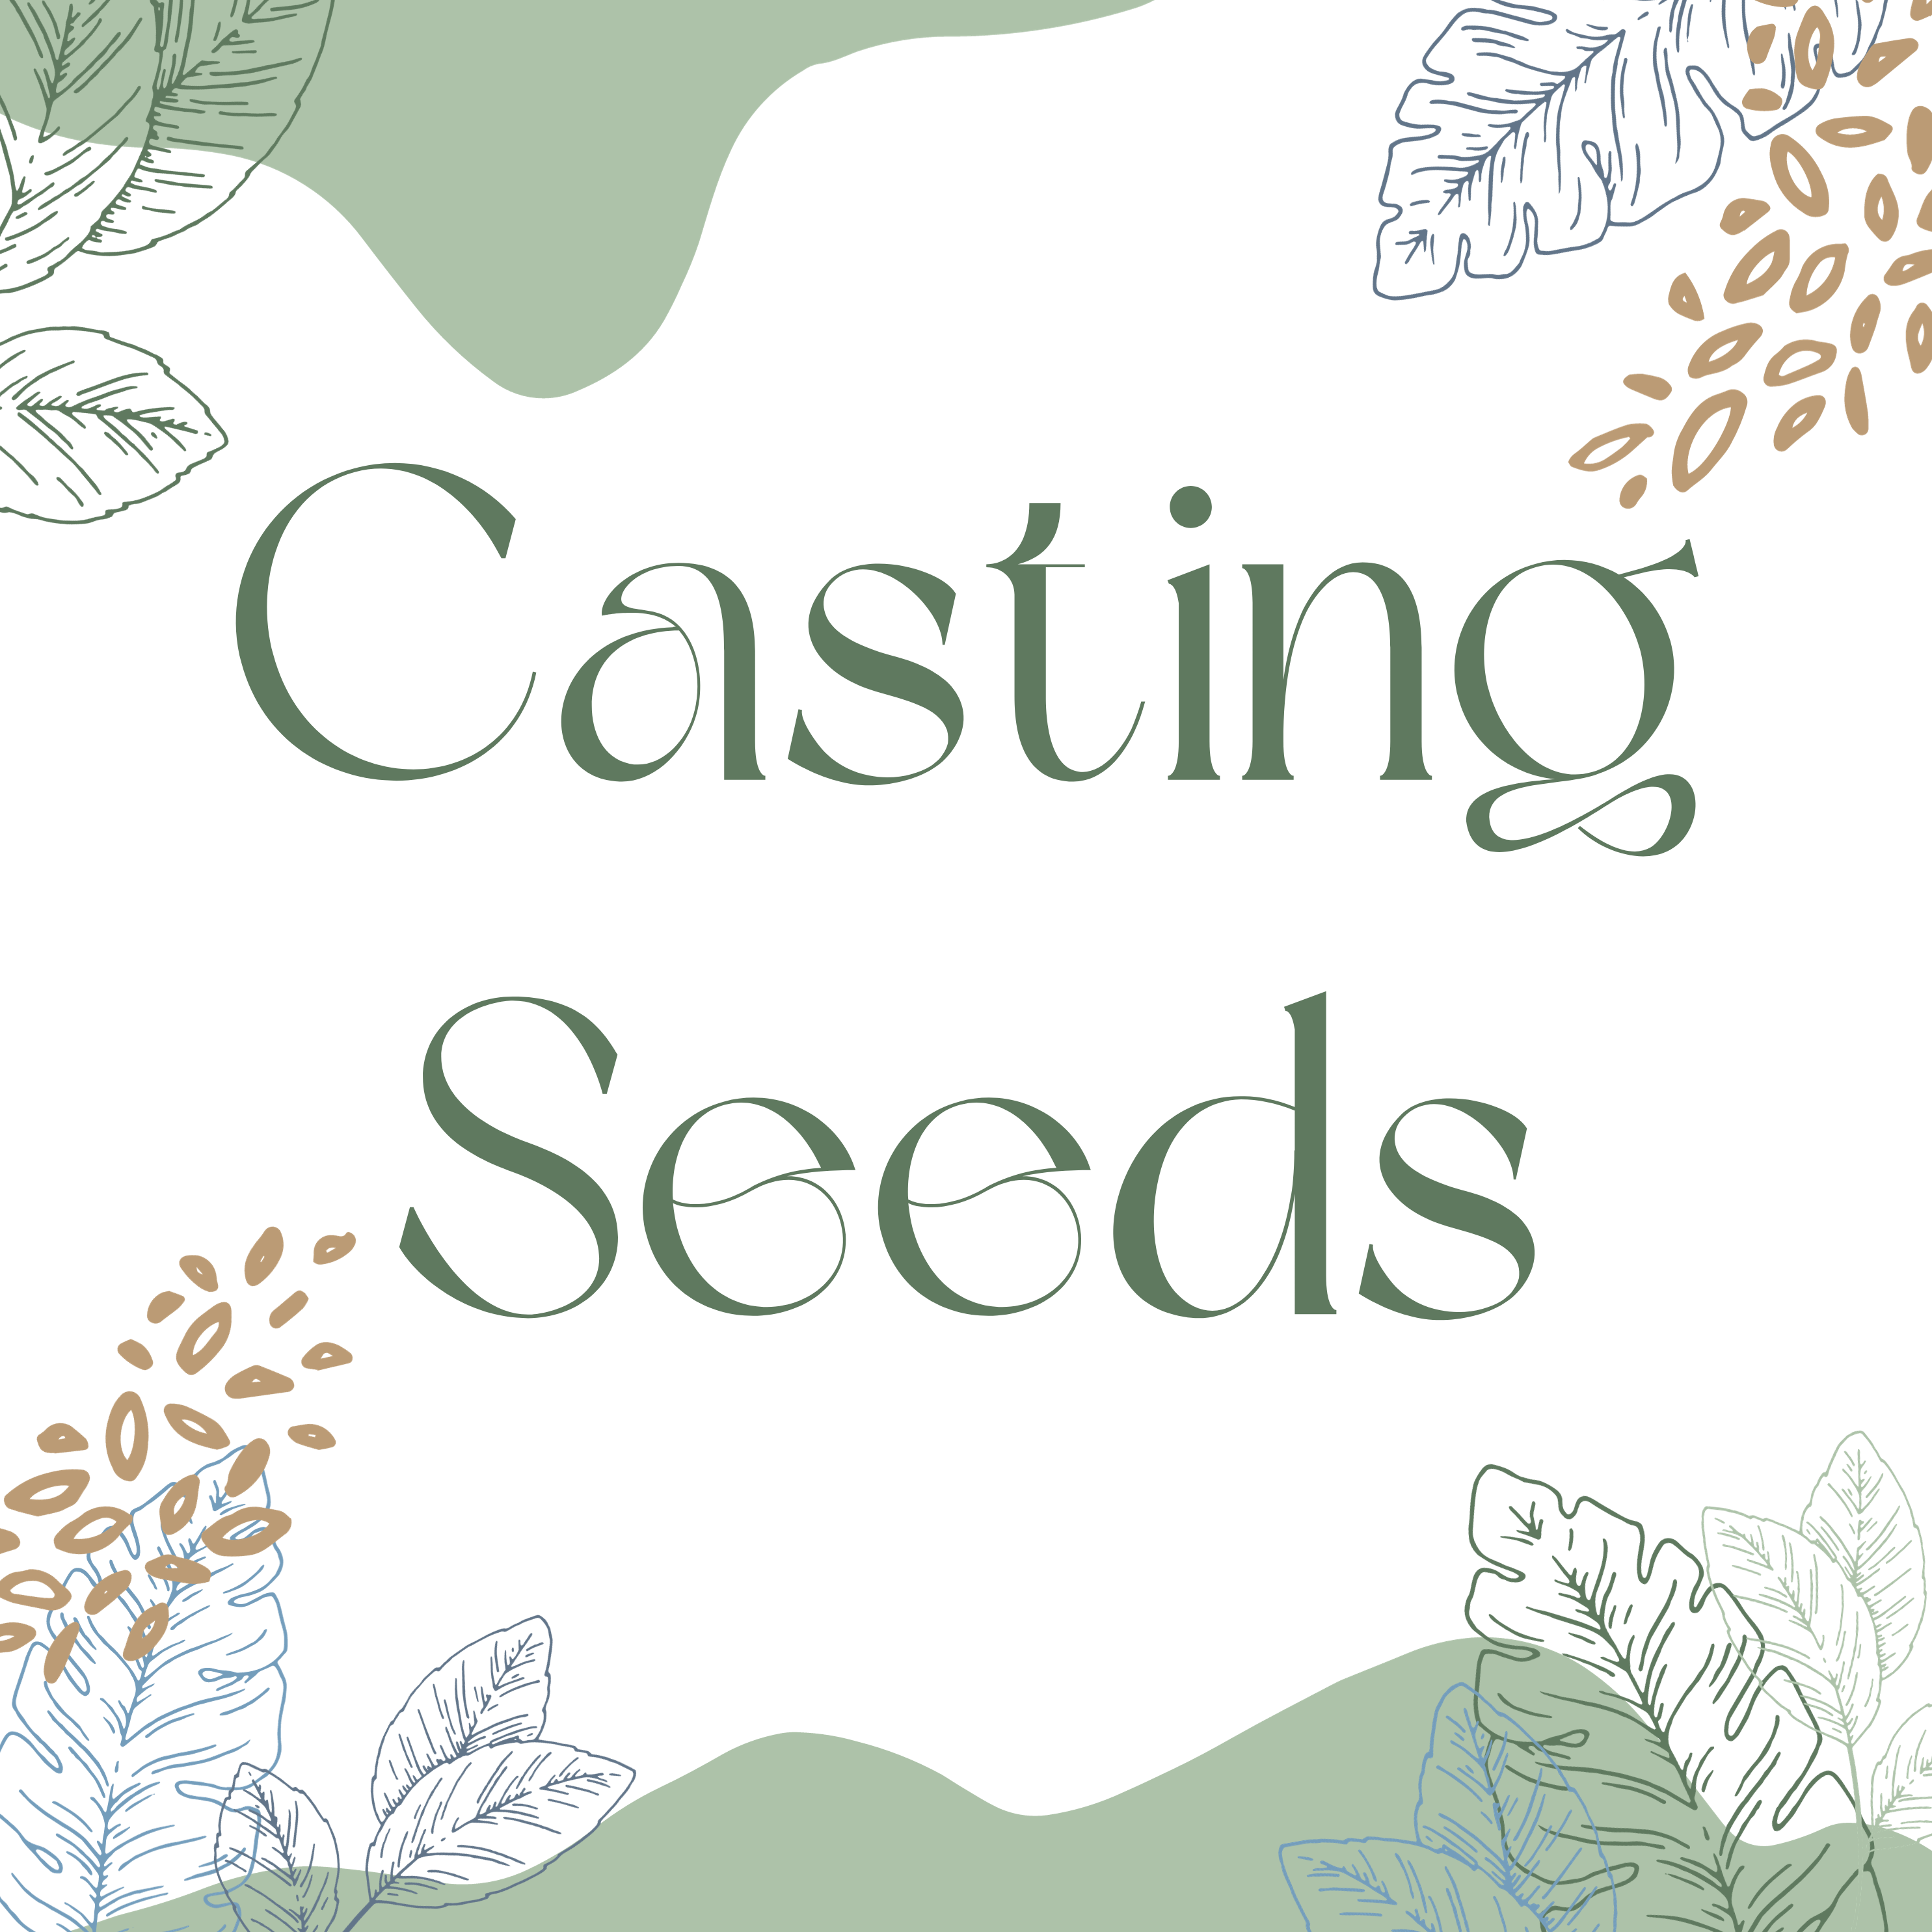 Casting Seeds